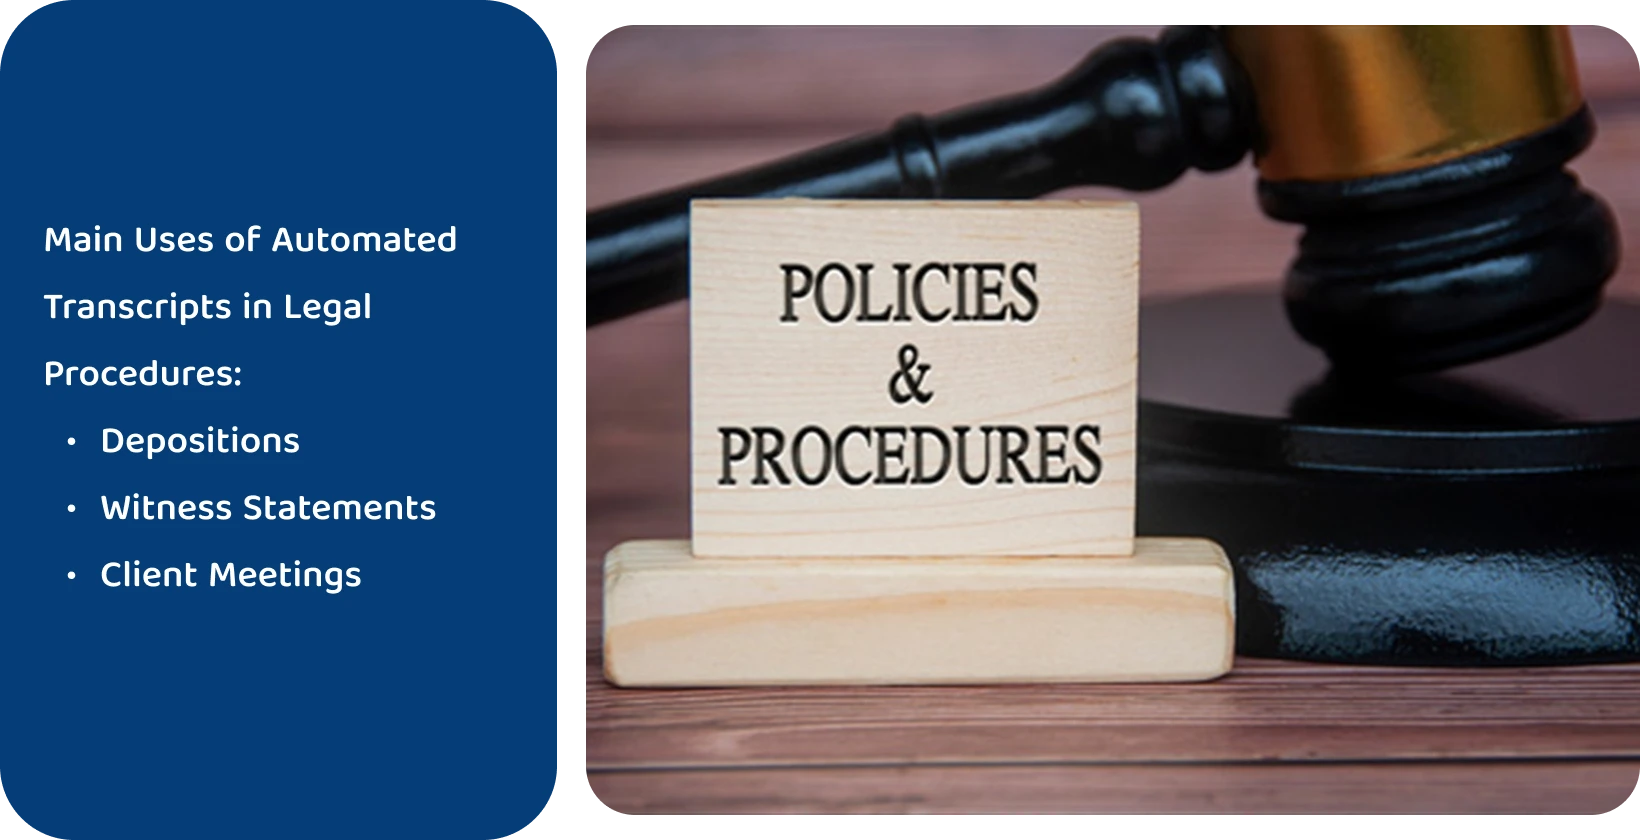 Σφυρί δίπλα στην πινακίδα «Πολιτικές & Διαδικασίες», που αντιπροσωπεύει τα νομικά πρότυπα που πληρούνται από αυτοματοποιημένα εργαλεία μεταγραφής.